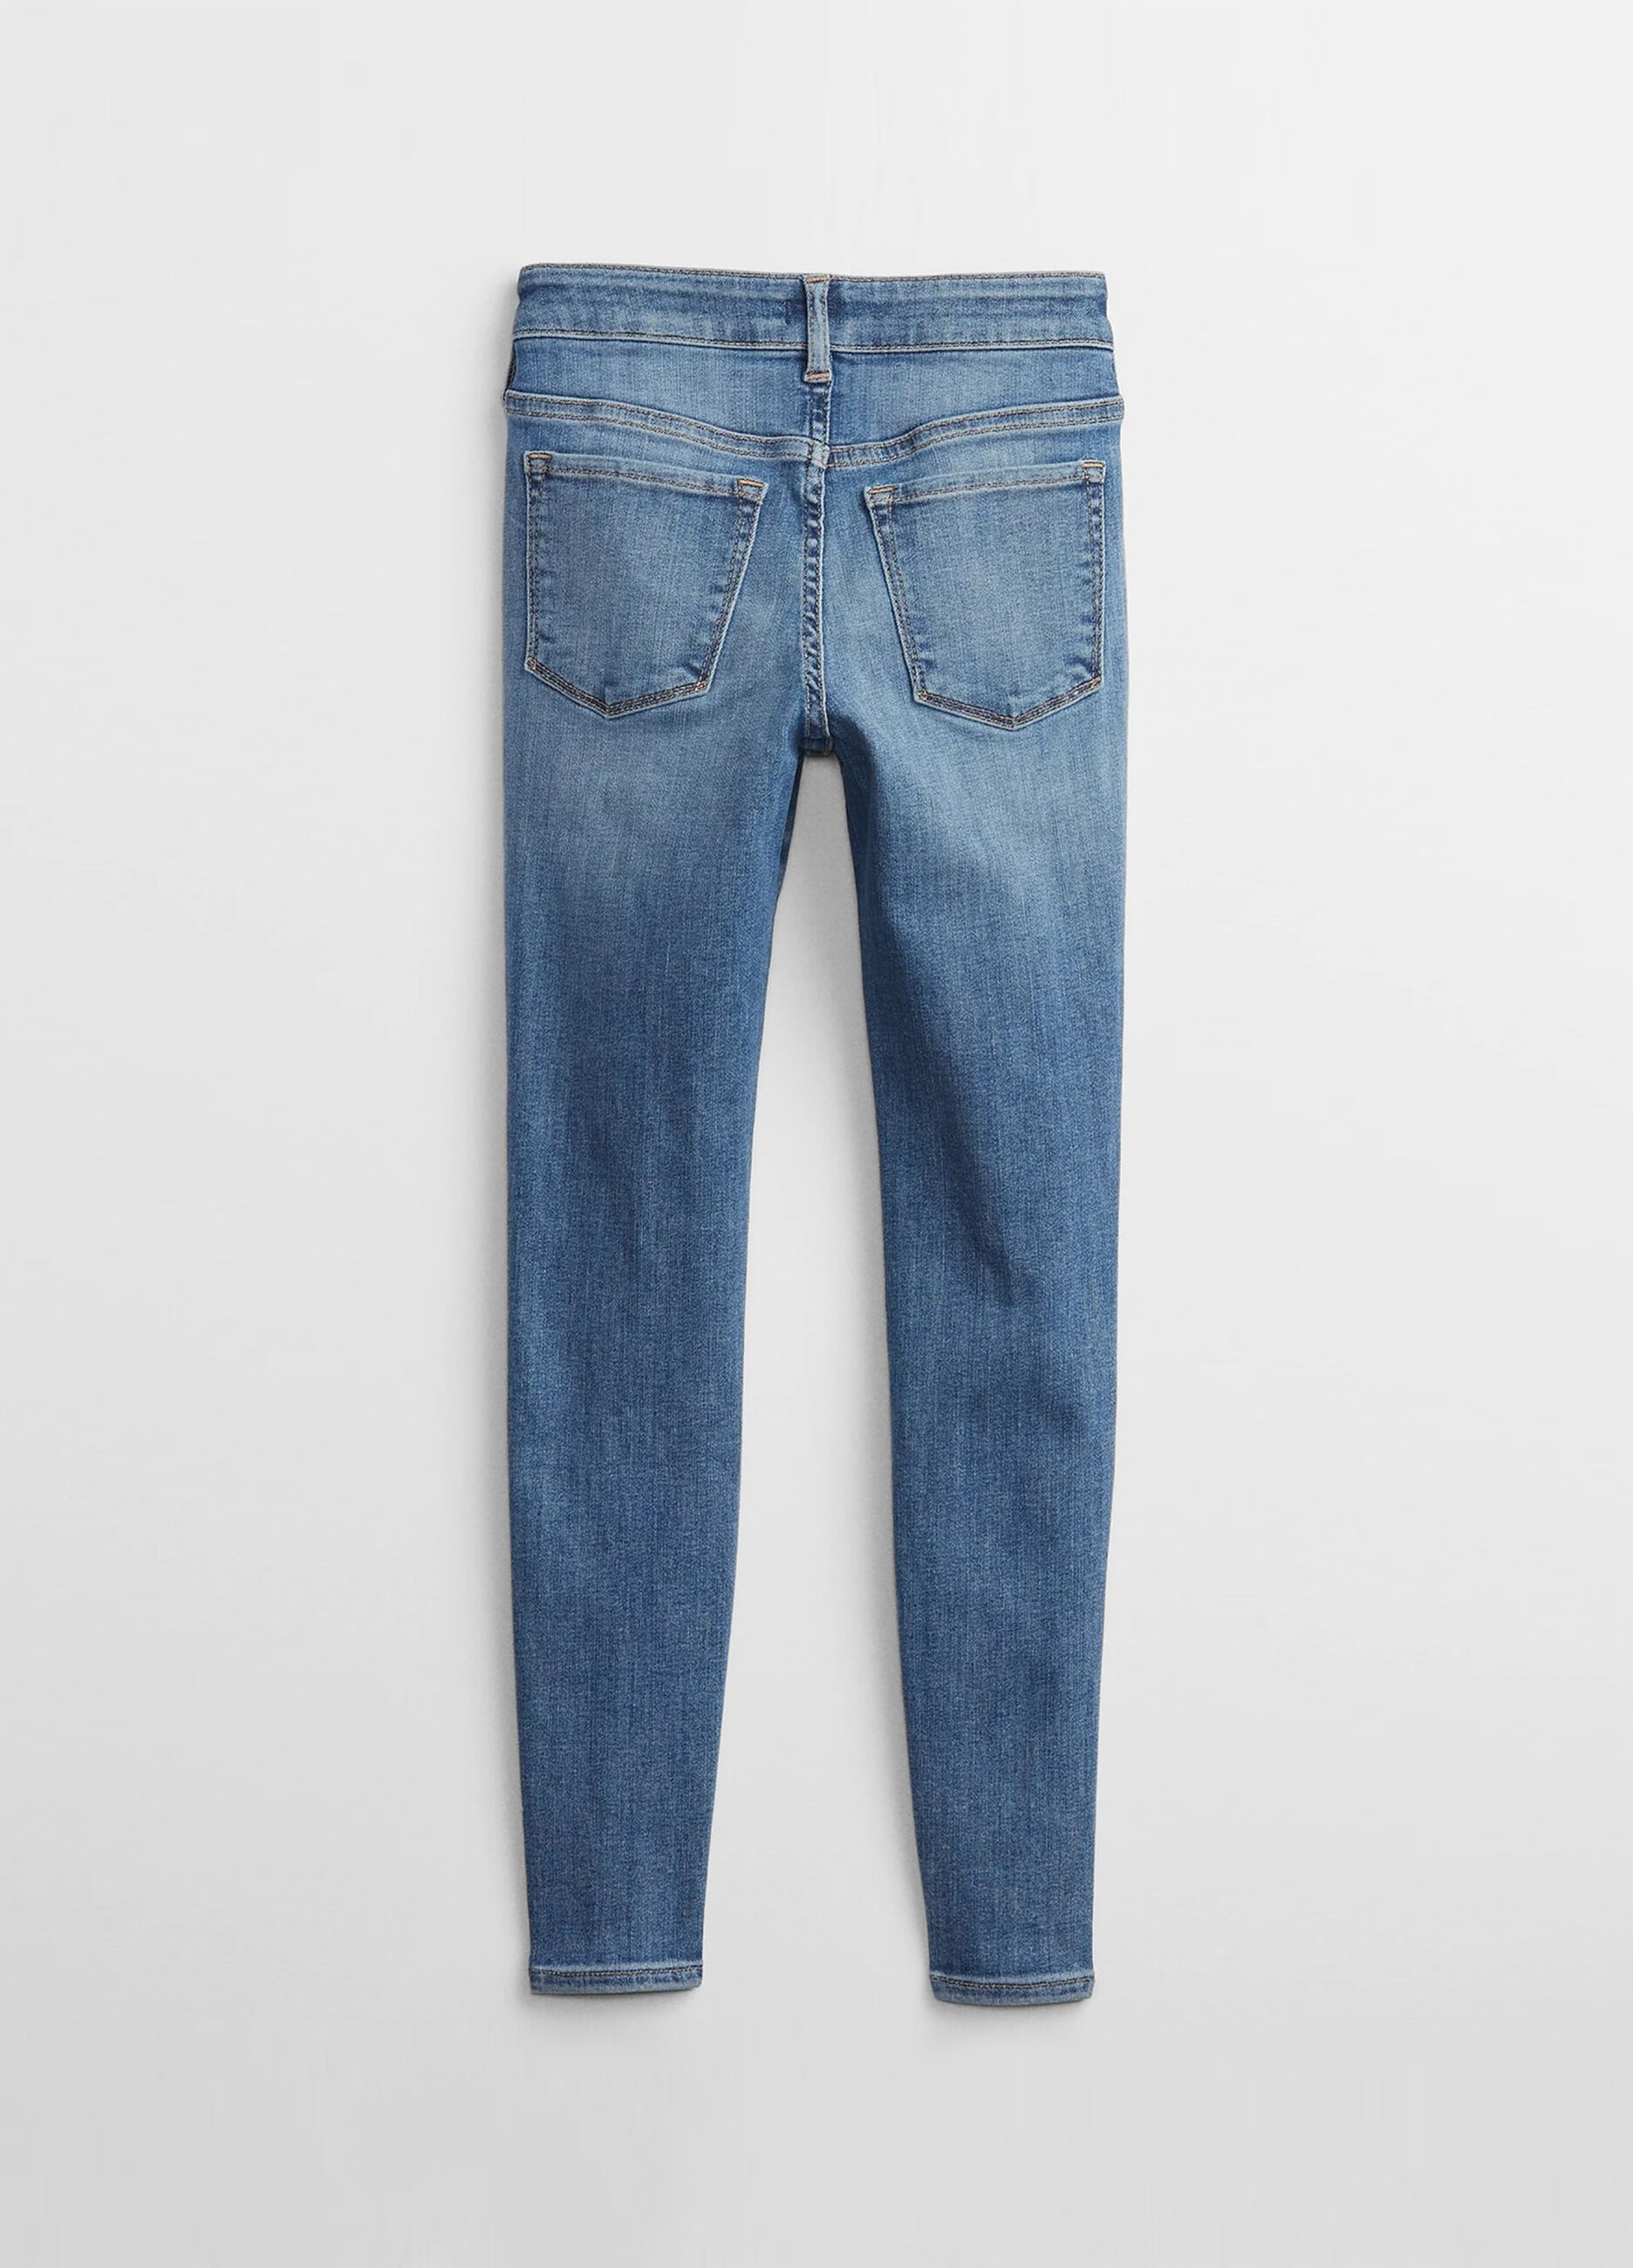 5-pocket, skinny-fit jeans.